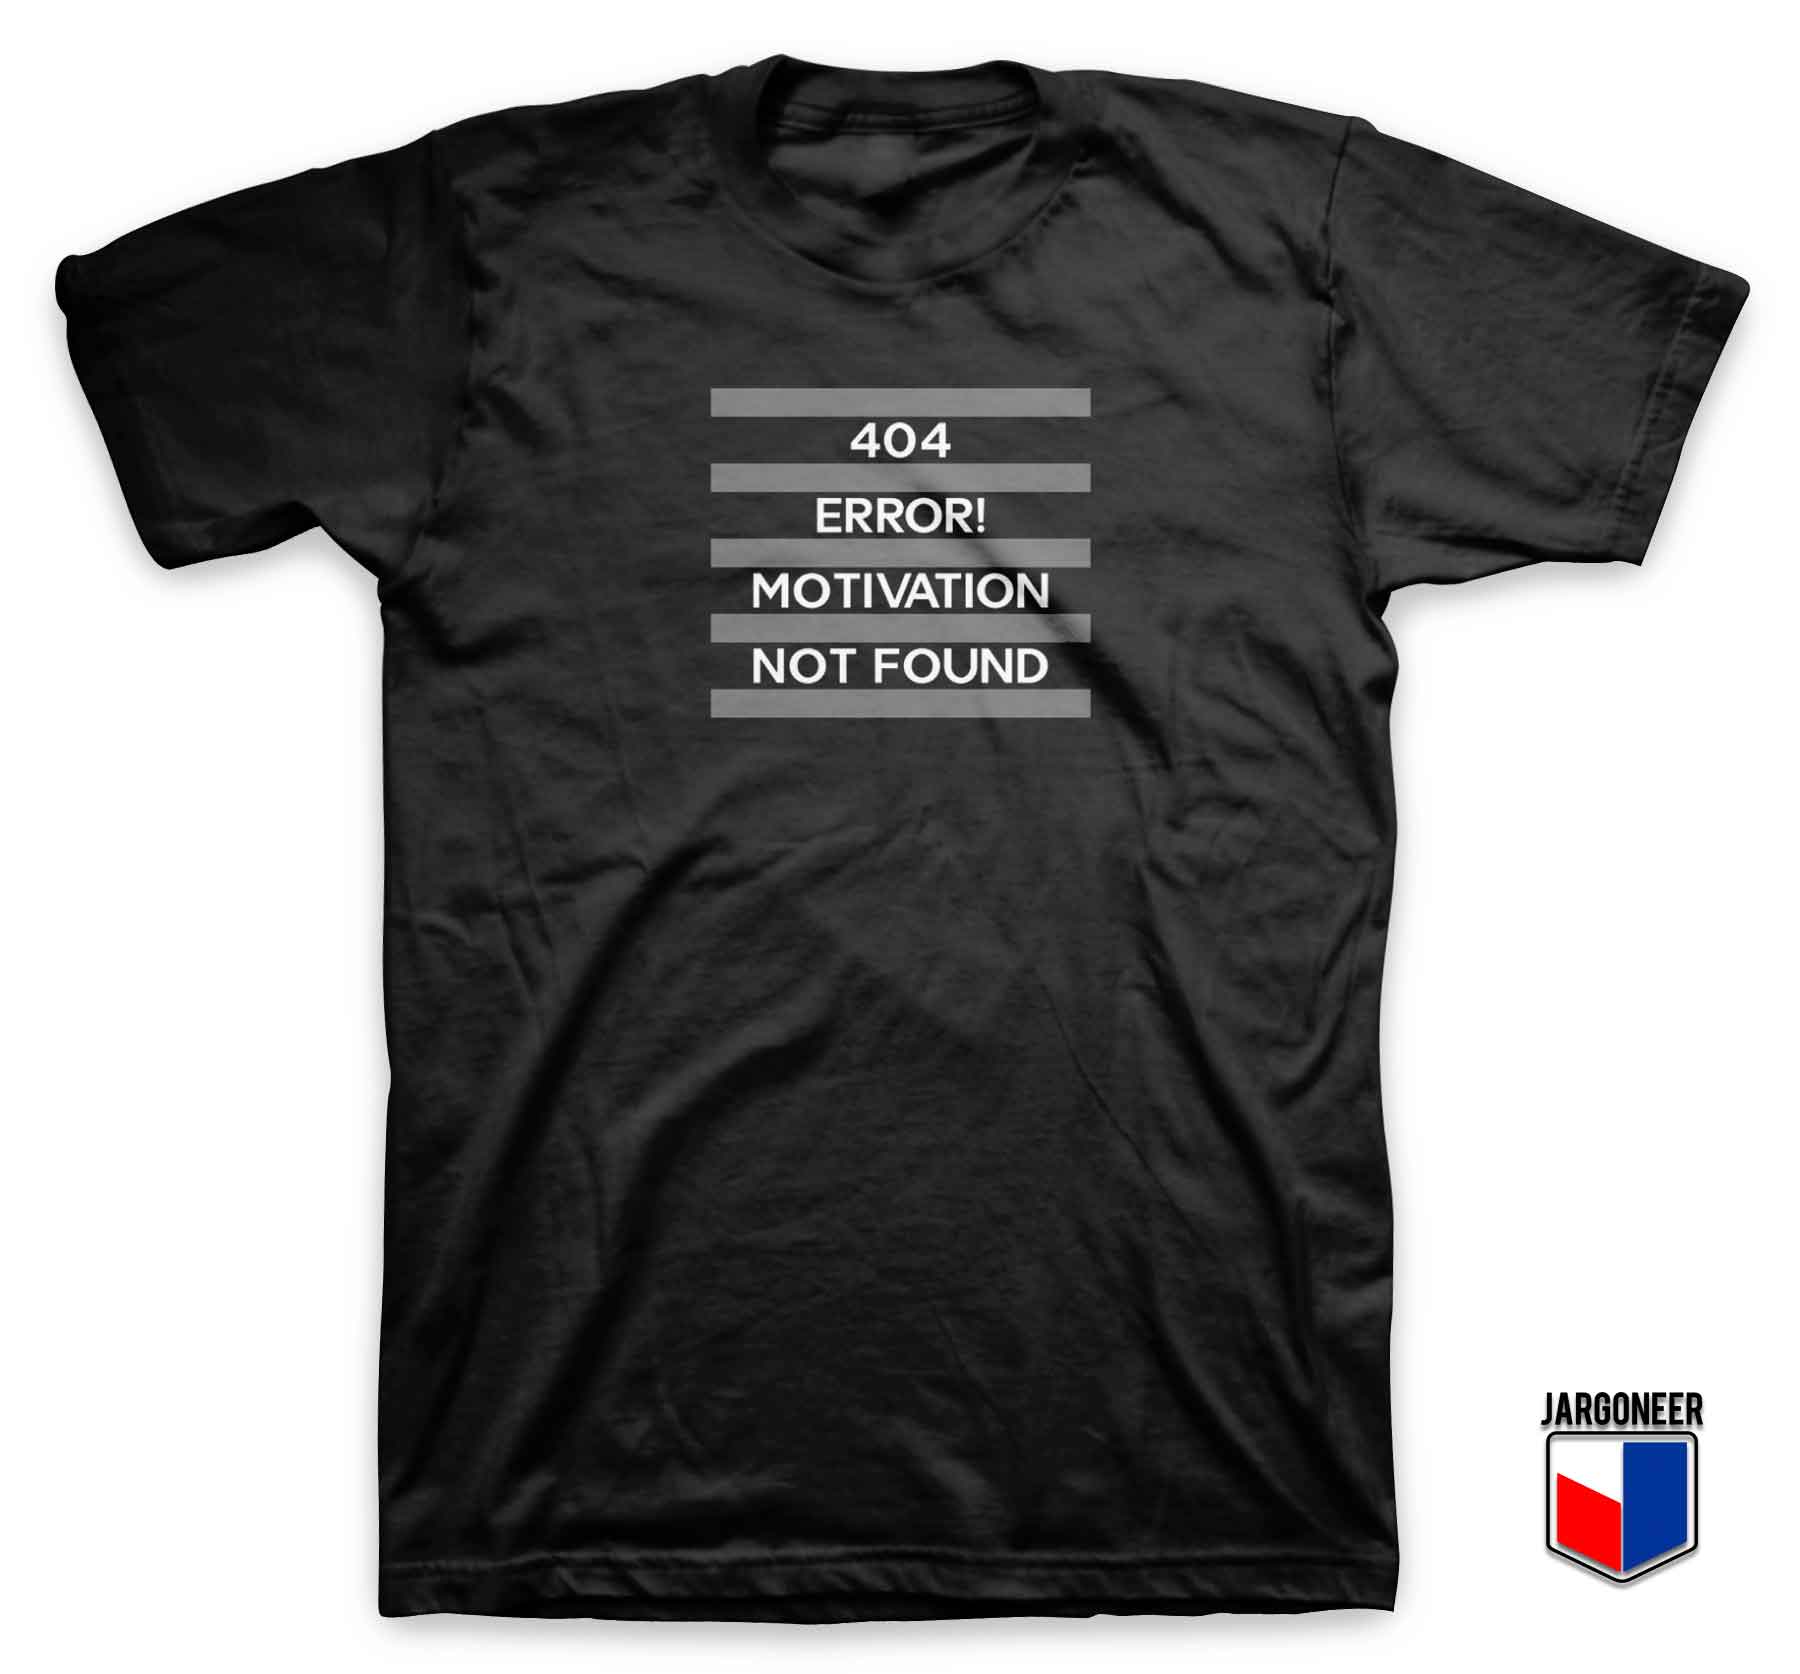 404 Error Motivation Not Found T Shirt - Shop Unique Graphic Cool Shirt Designs